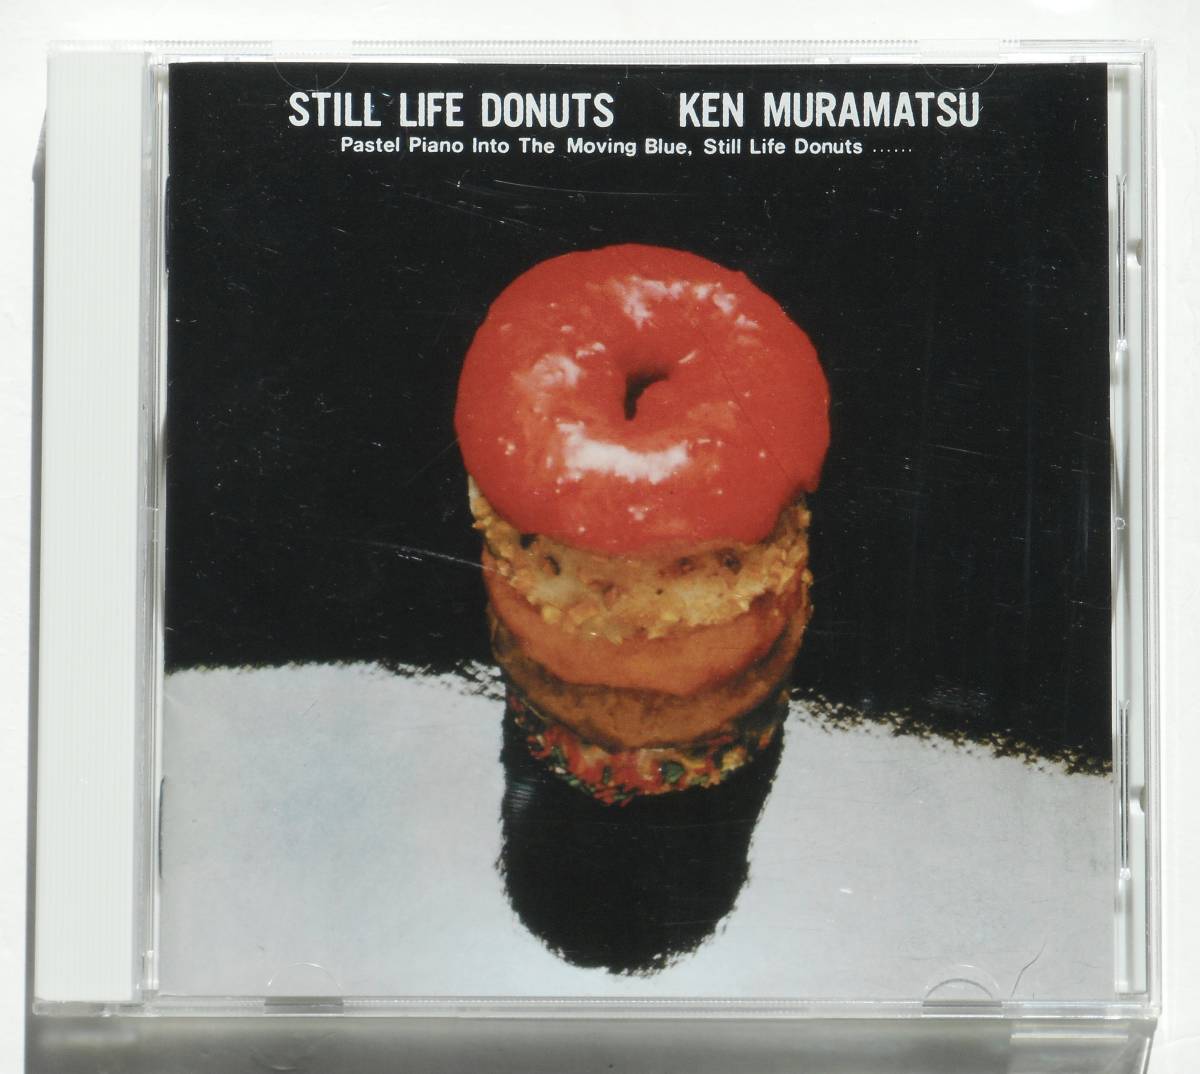 村松健『Still Life Donuts』【SACD Hybrid】芳野藤丸, 土方隆行, 青山純, 村岡健ら豪華演奏者 《Light Mellow》83年の1stアルバムを再発